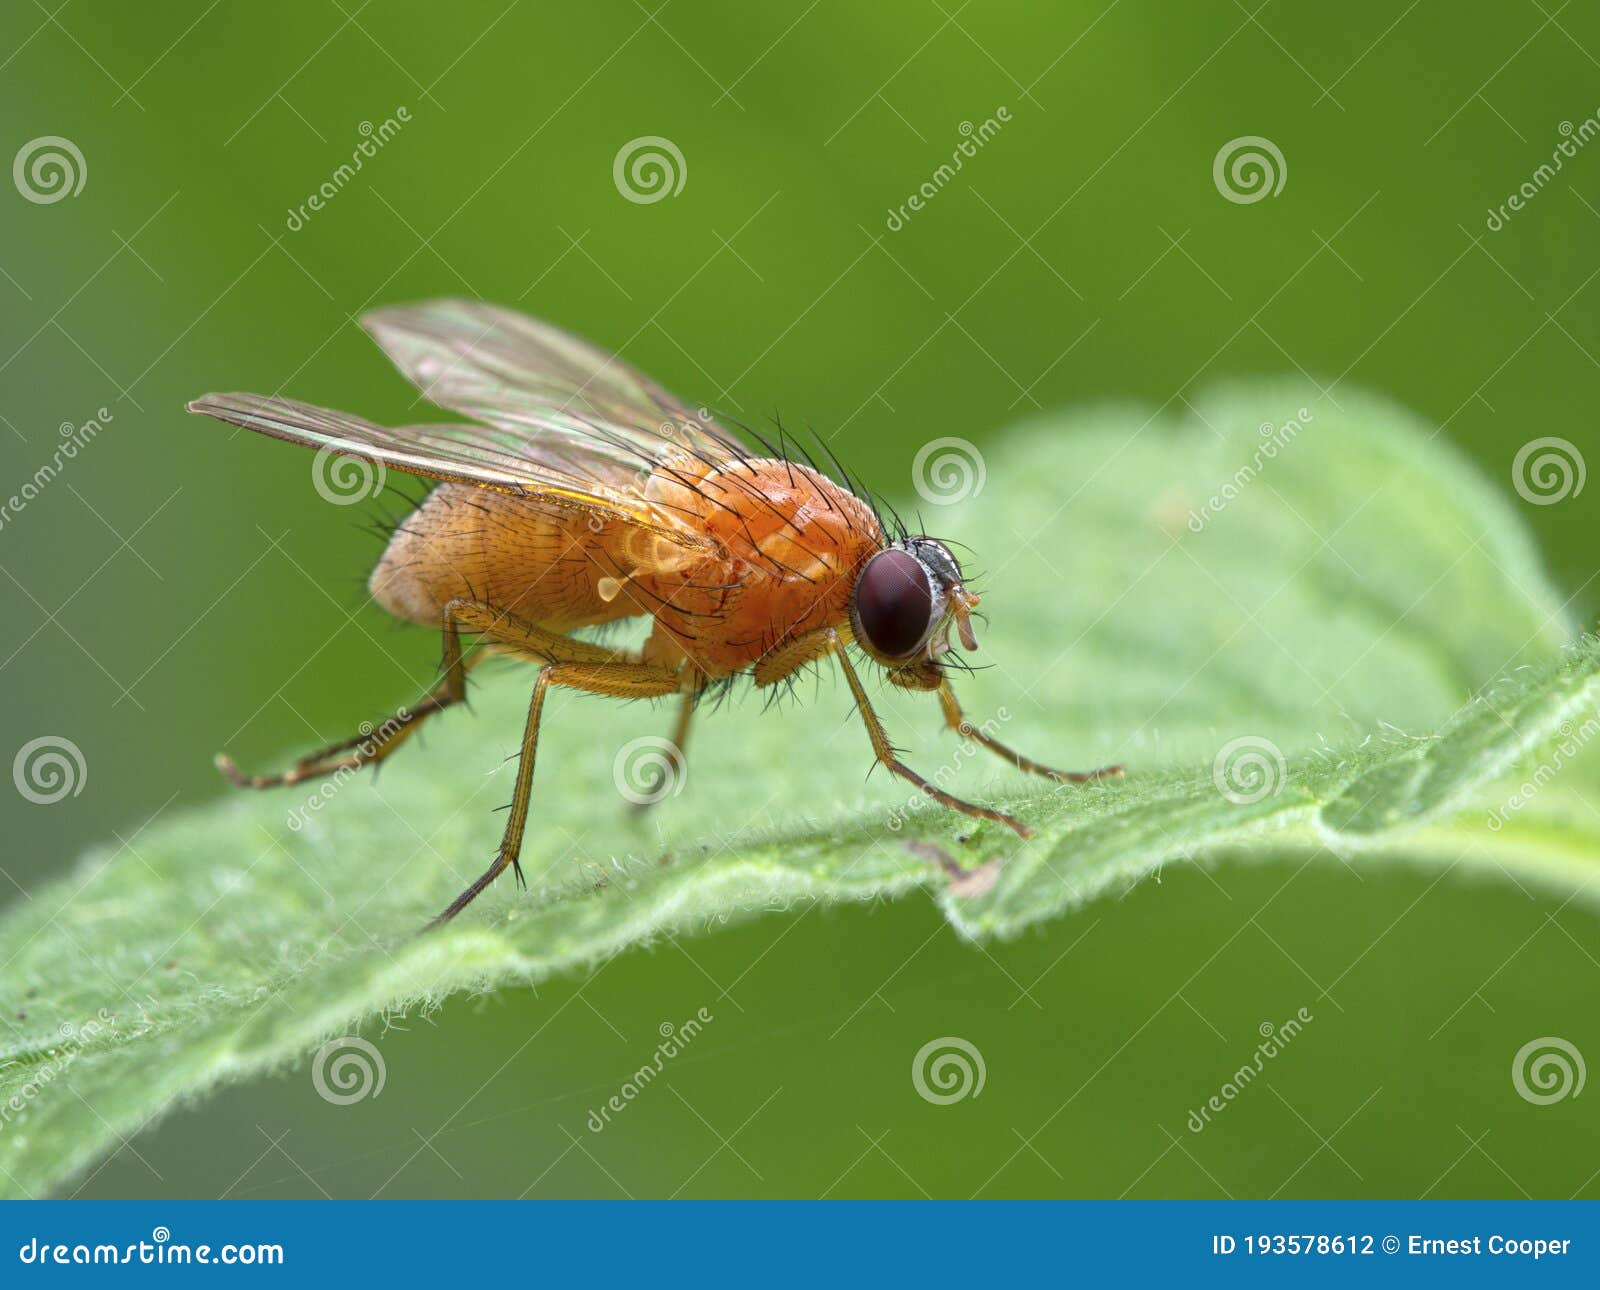 p1010034 bright orange fly, thricops diaphanu, on a green leaf, deas island, bc cecp 2020